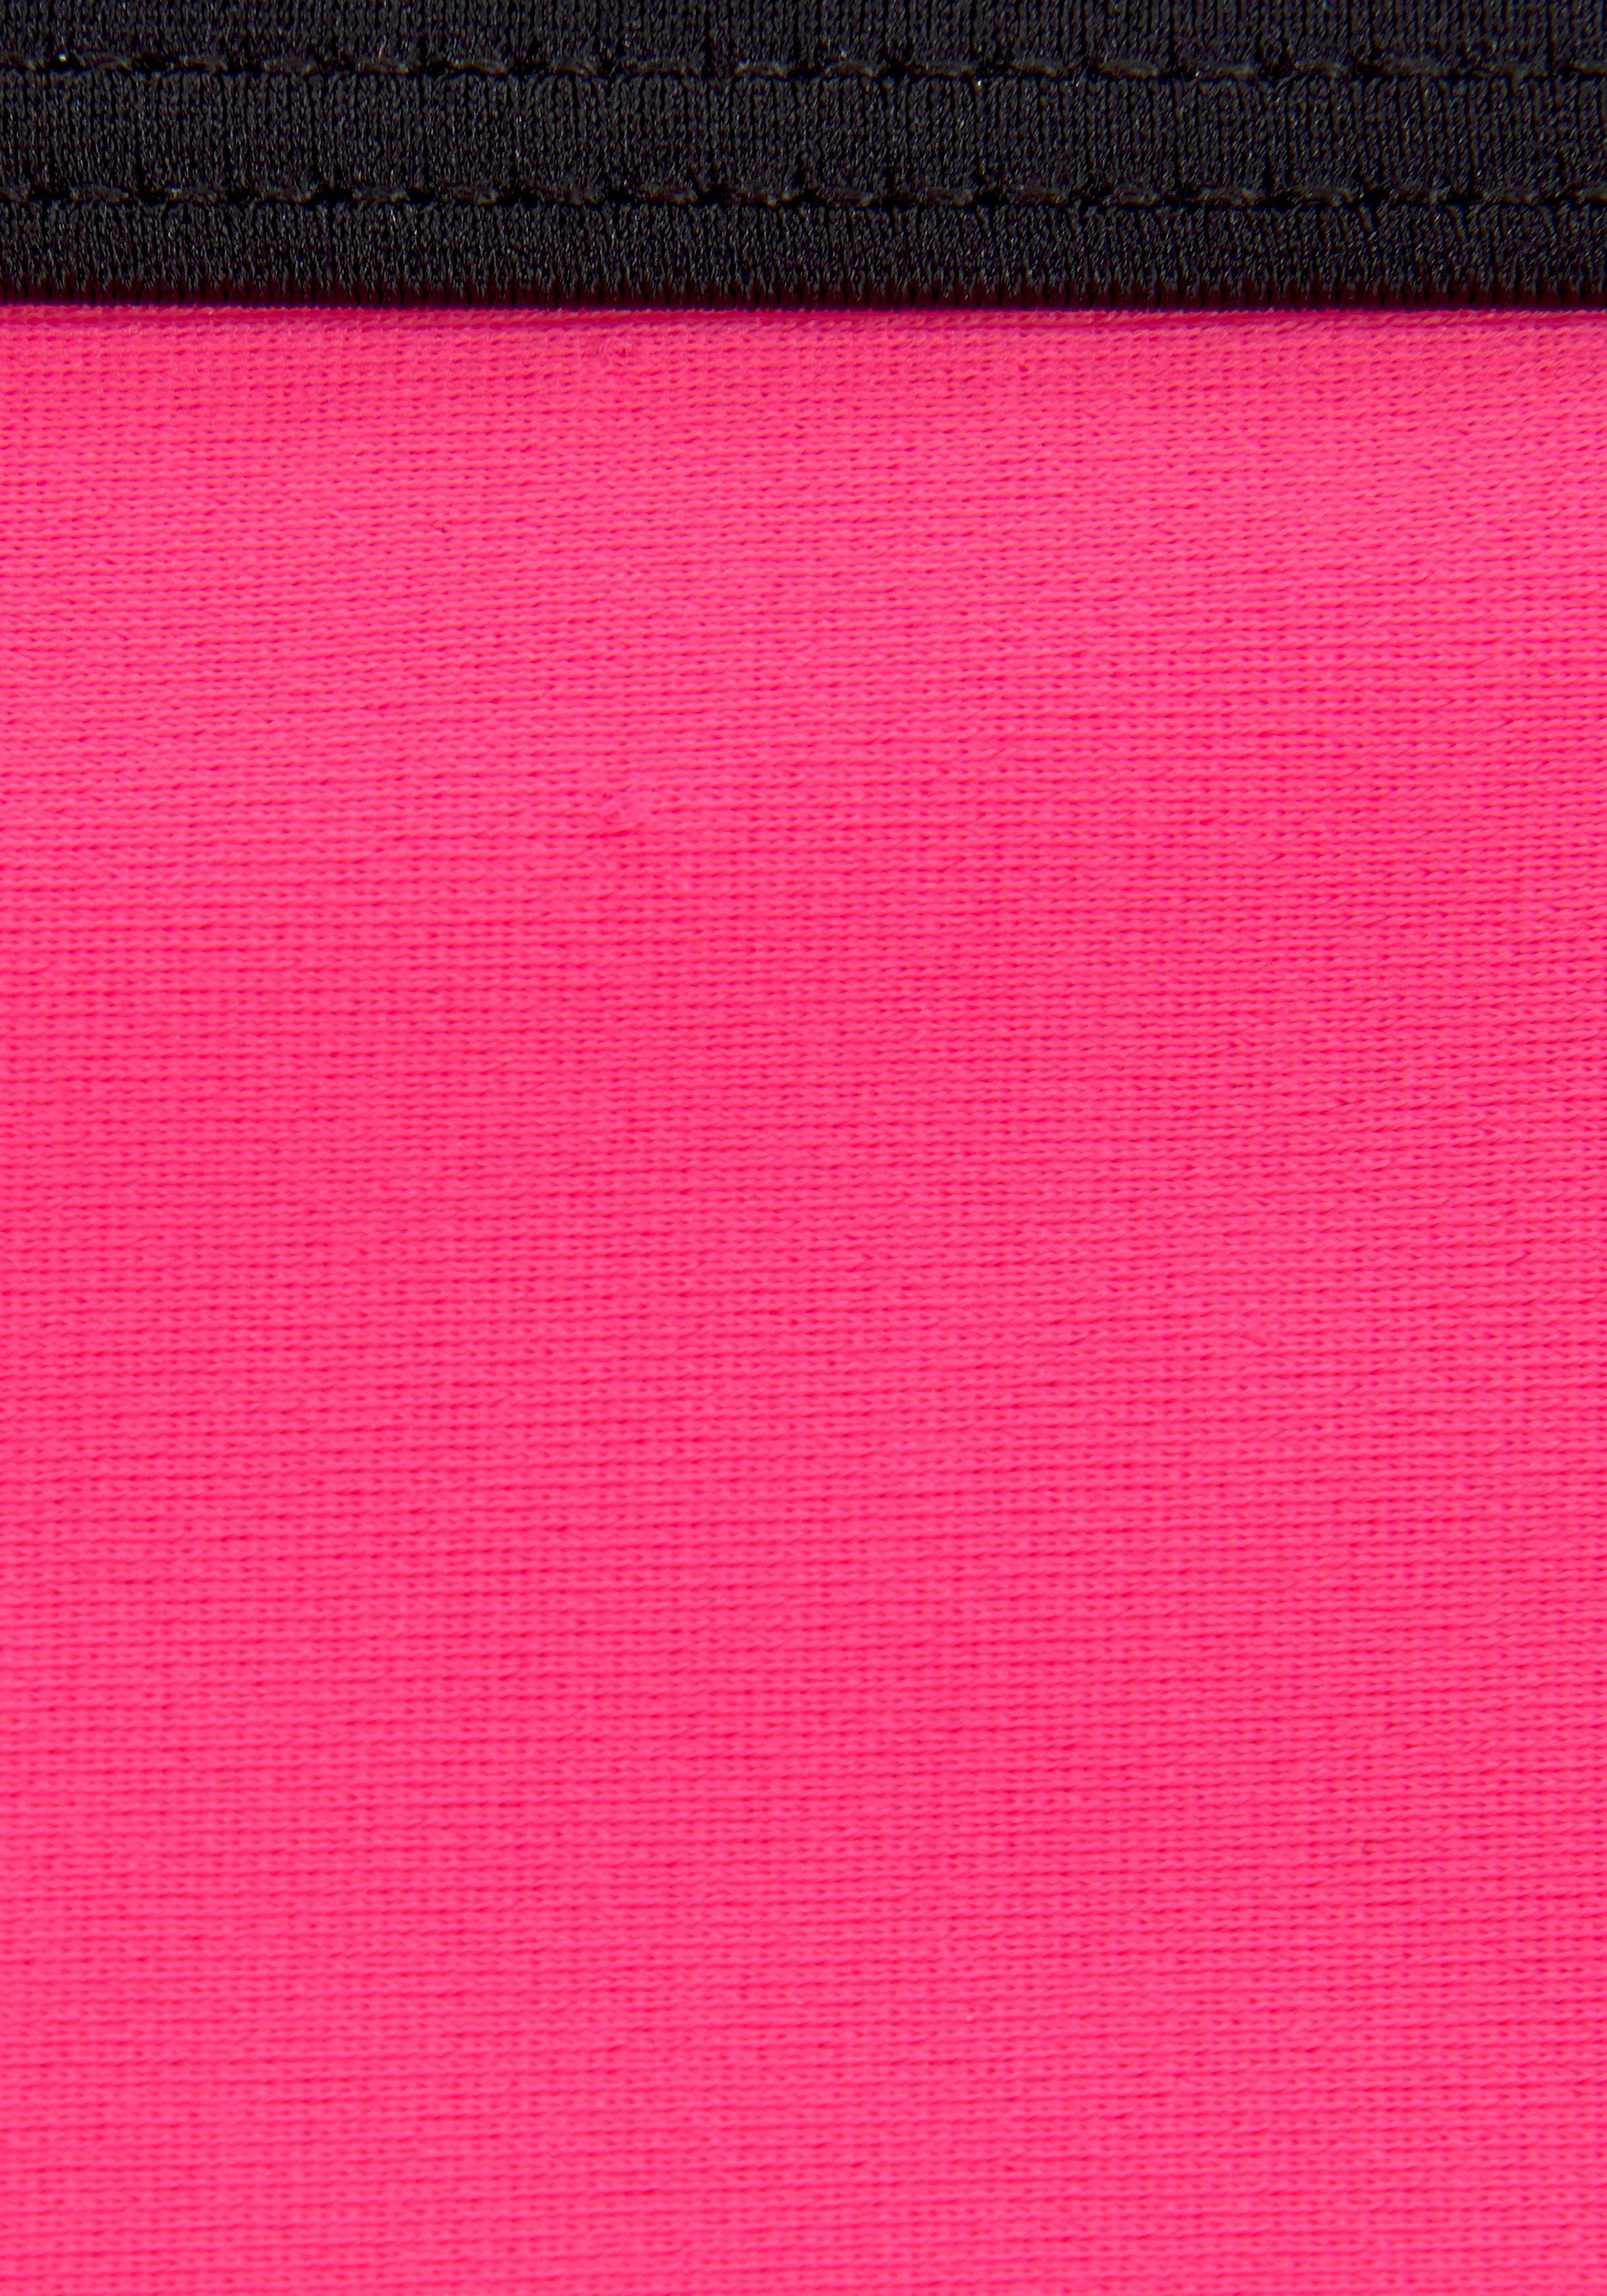 Bench. Triangel-Bikini mit Logoprint an Hose und Top pink-schwarz